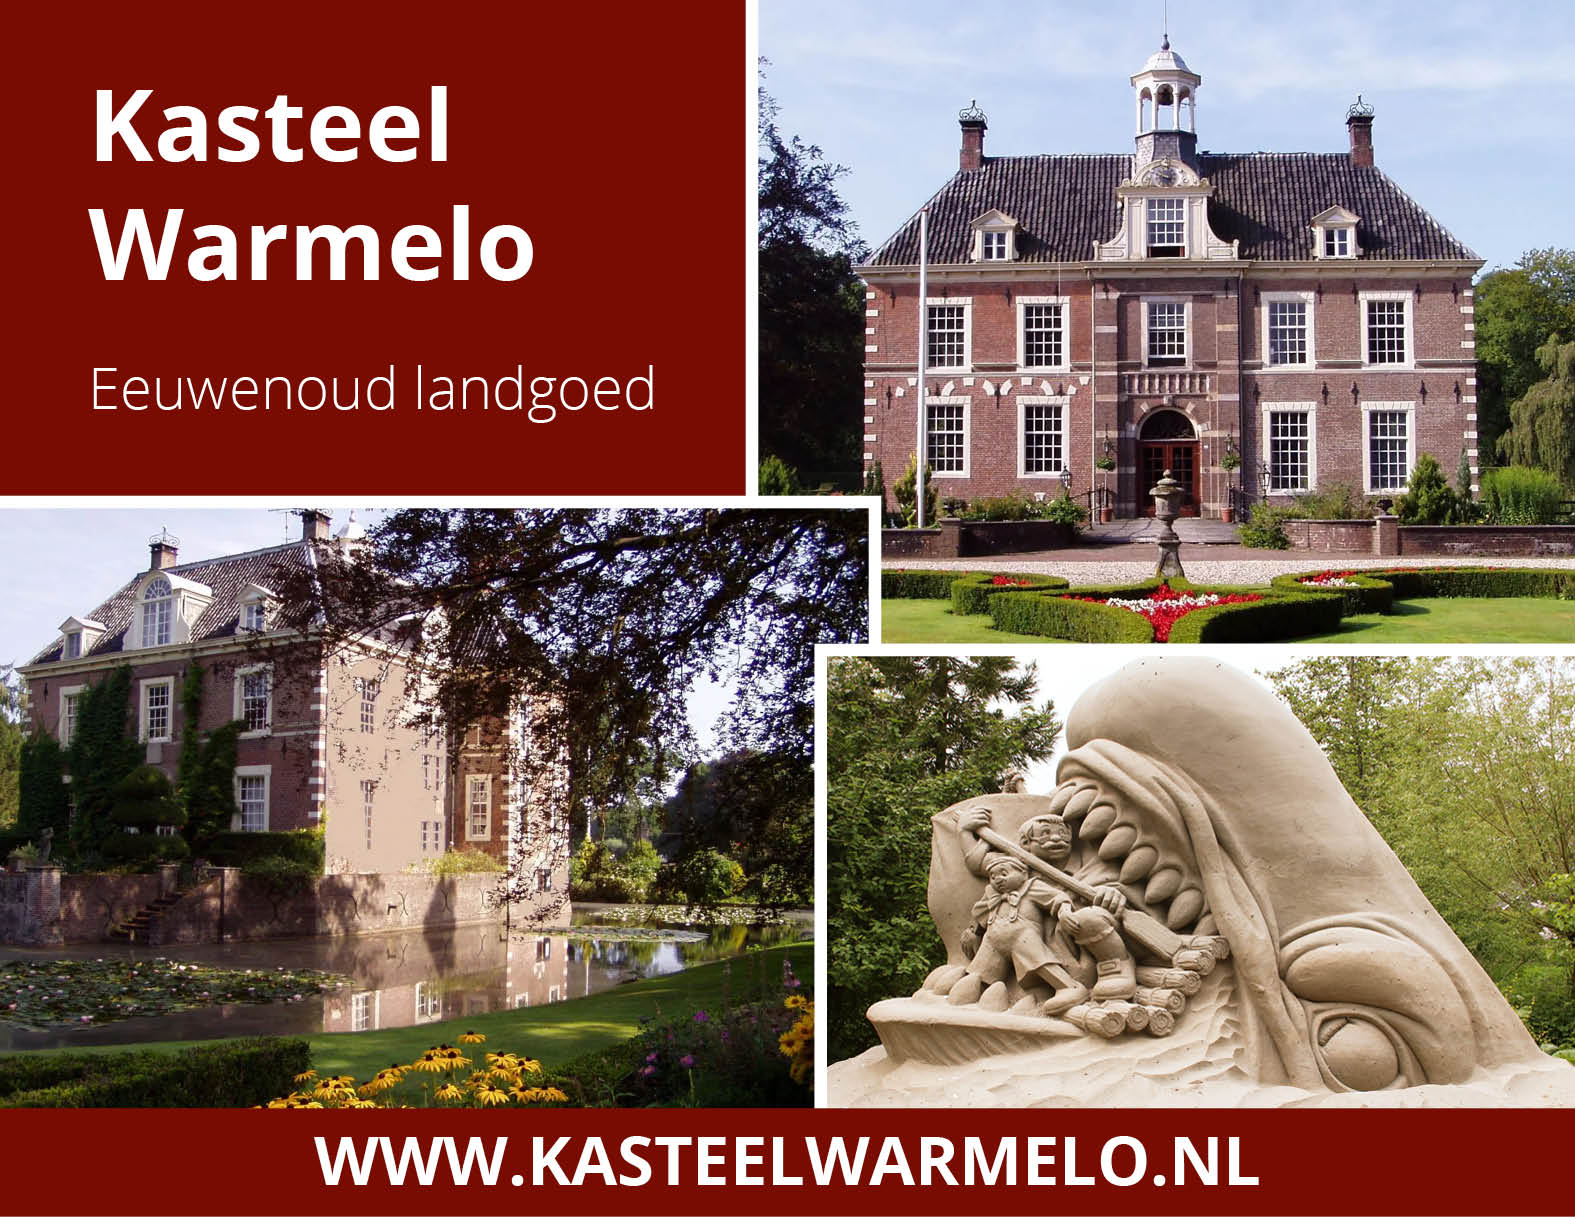 Stichting Park Kasteel warmelo